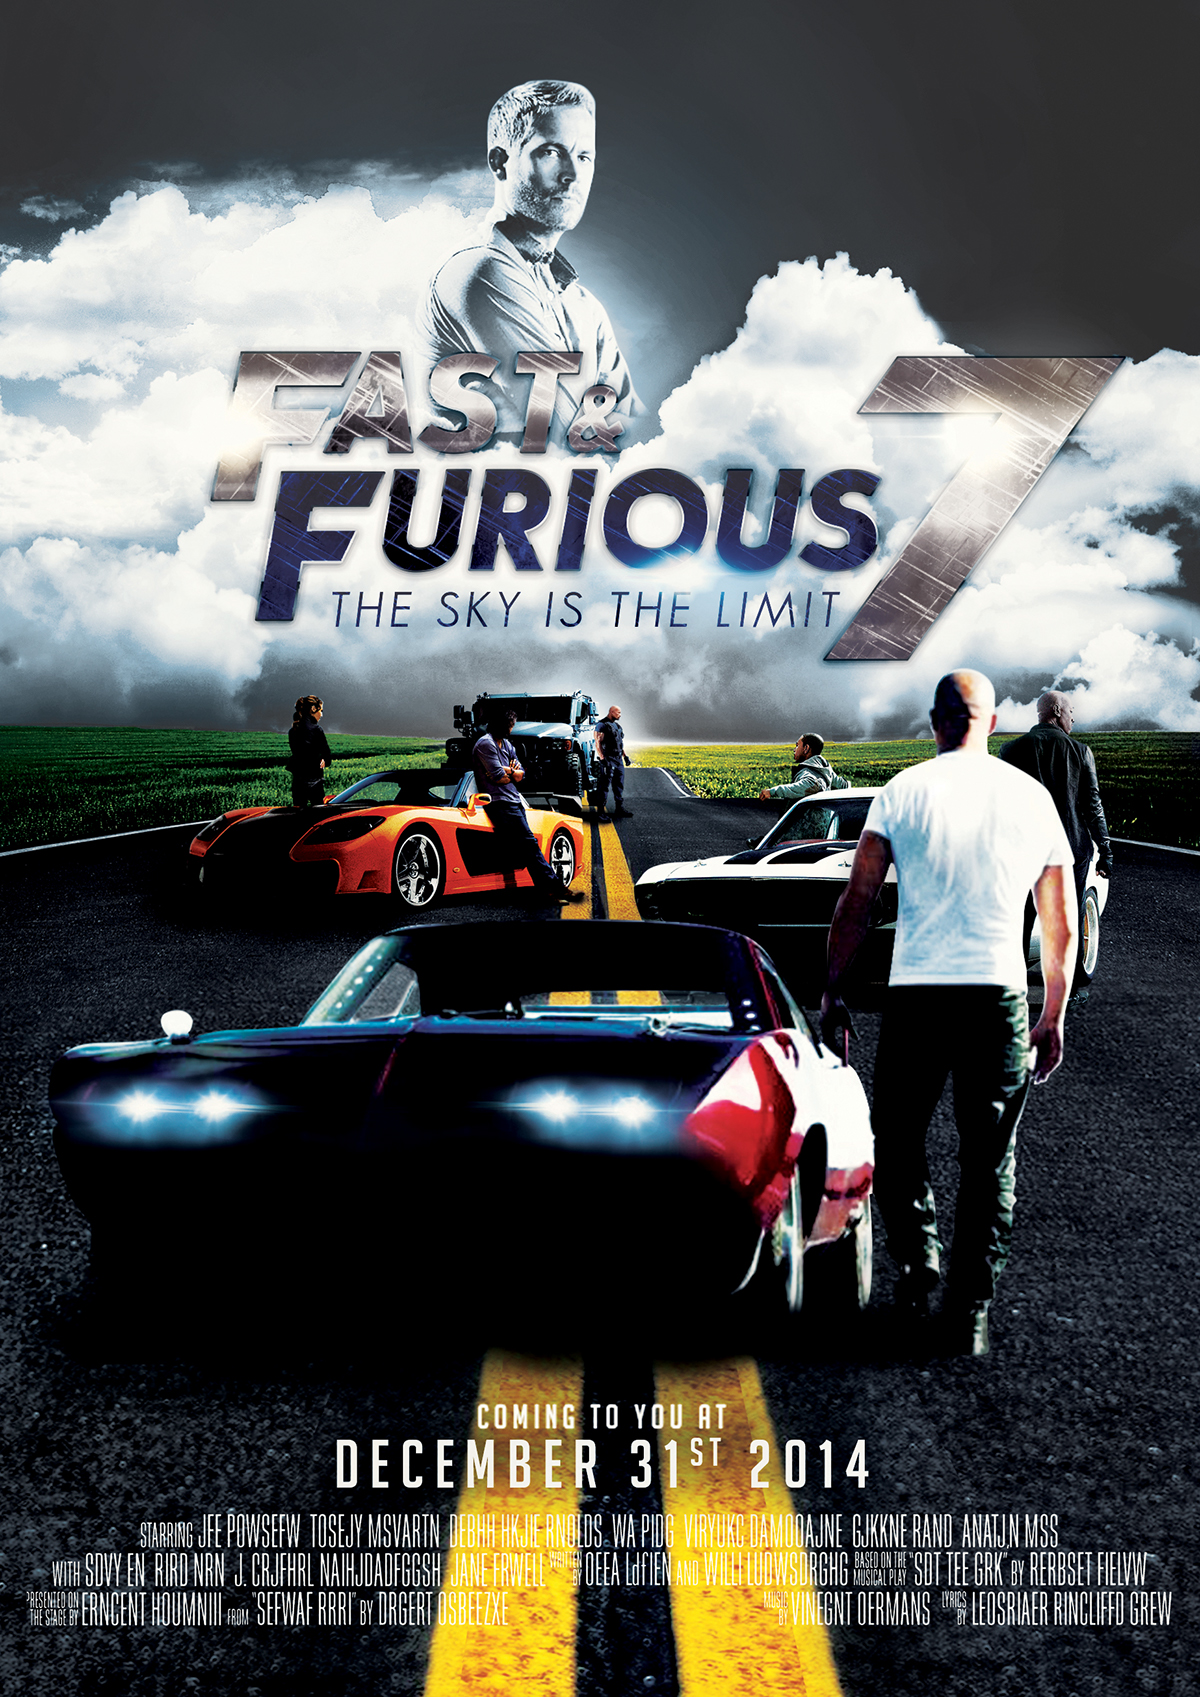 fast FastFurious PaulWalker movie furious Cinema